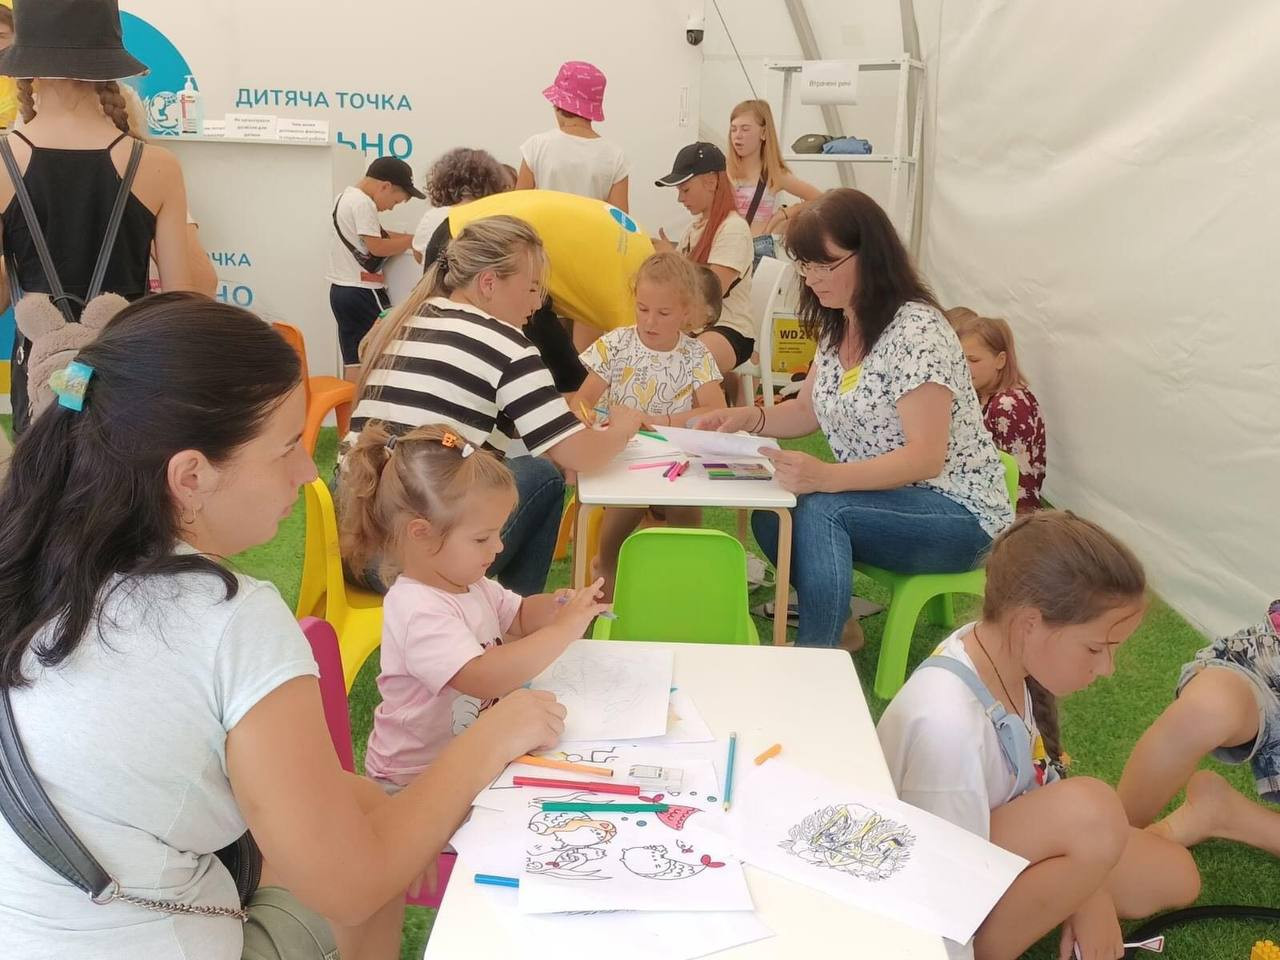 У Бородянці відкрили простір дозвілля для дітей від UNICEF - зображення